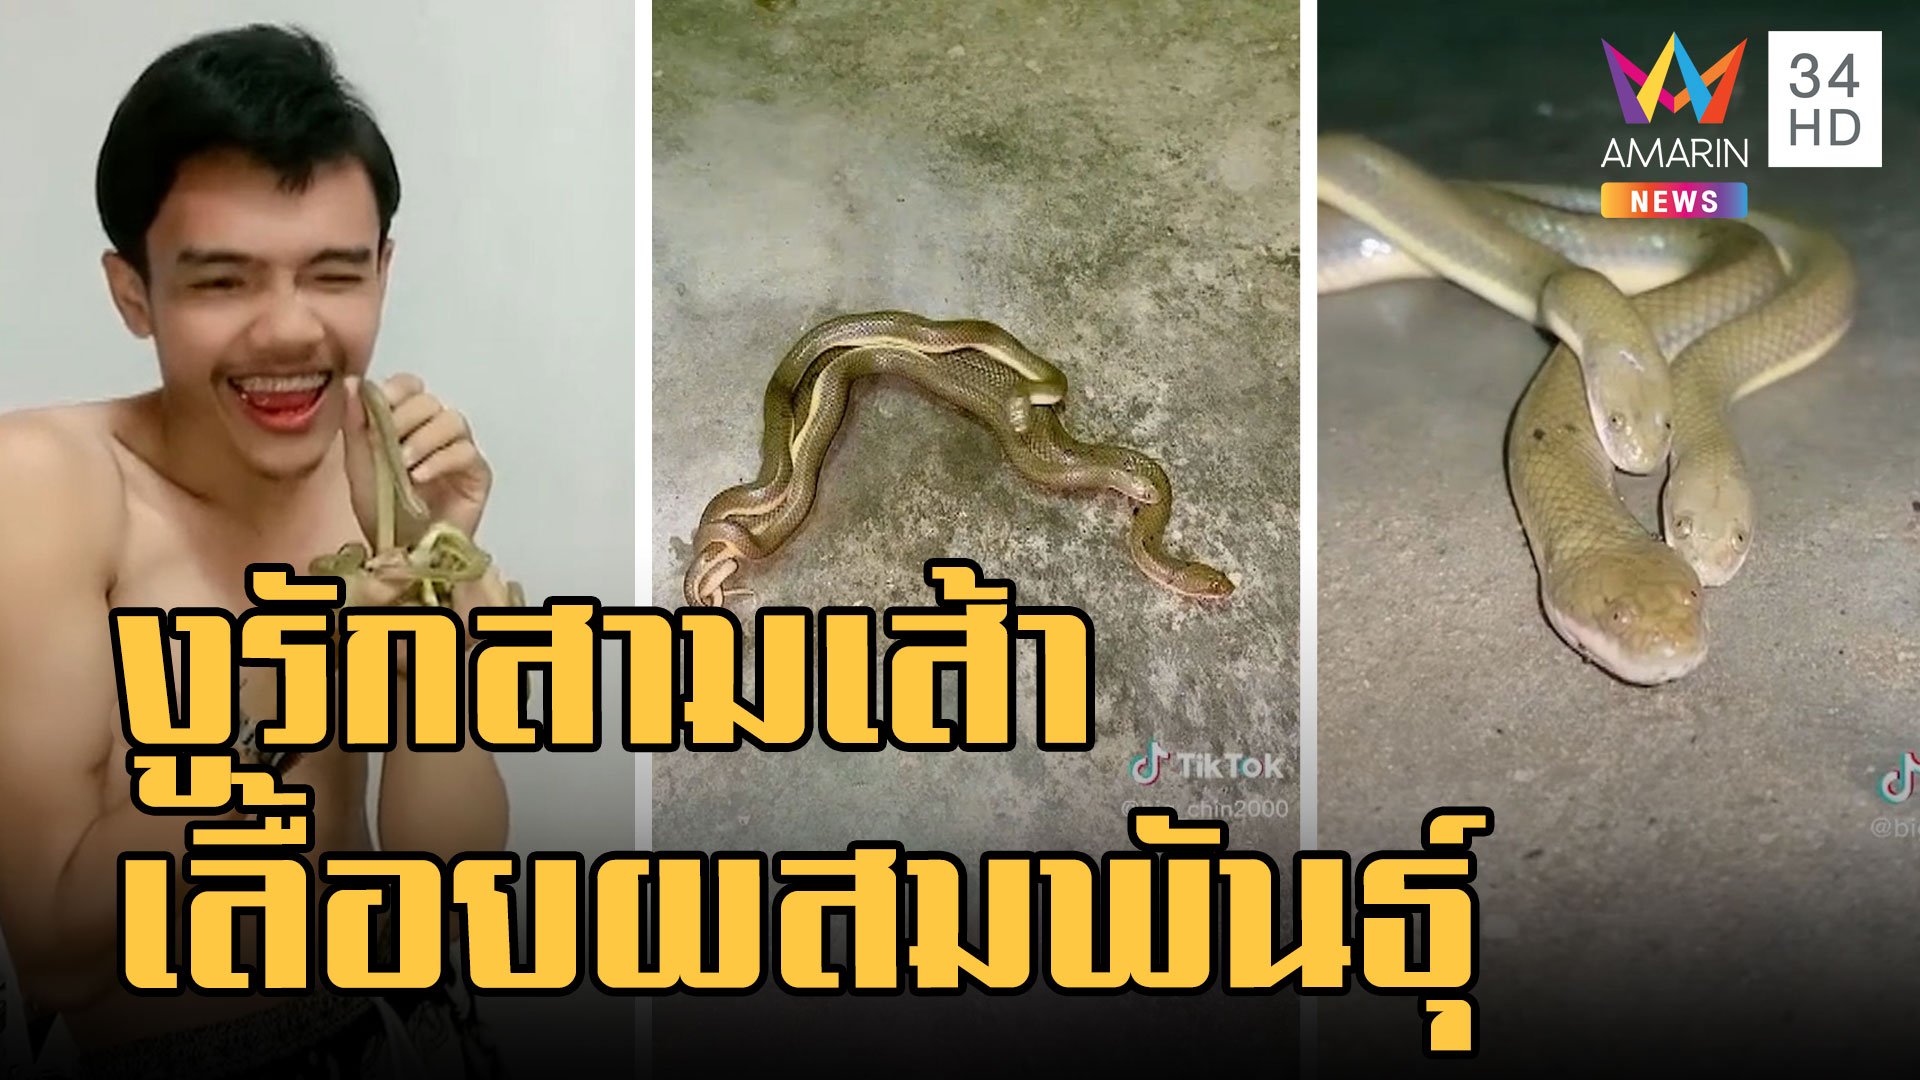 งูปลิง รักสามเส้าผสมพันธุ์ หนุ่มเลี้ยงไว้เลื้อยเข้าบ้านตอนน้ำท่วม | ข่าวอรุณอมรินทร์ | 14 พ.ย. 65 | AMARIN TVHD34